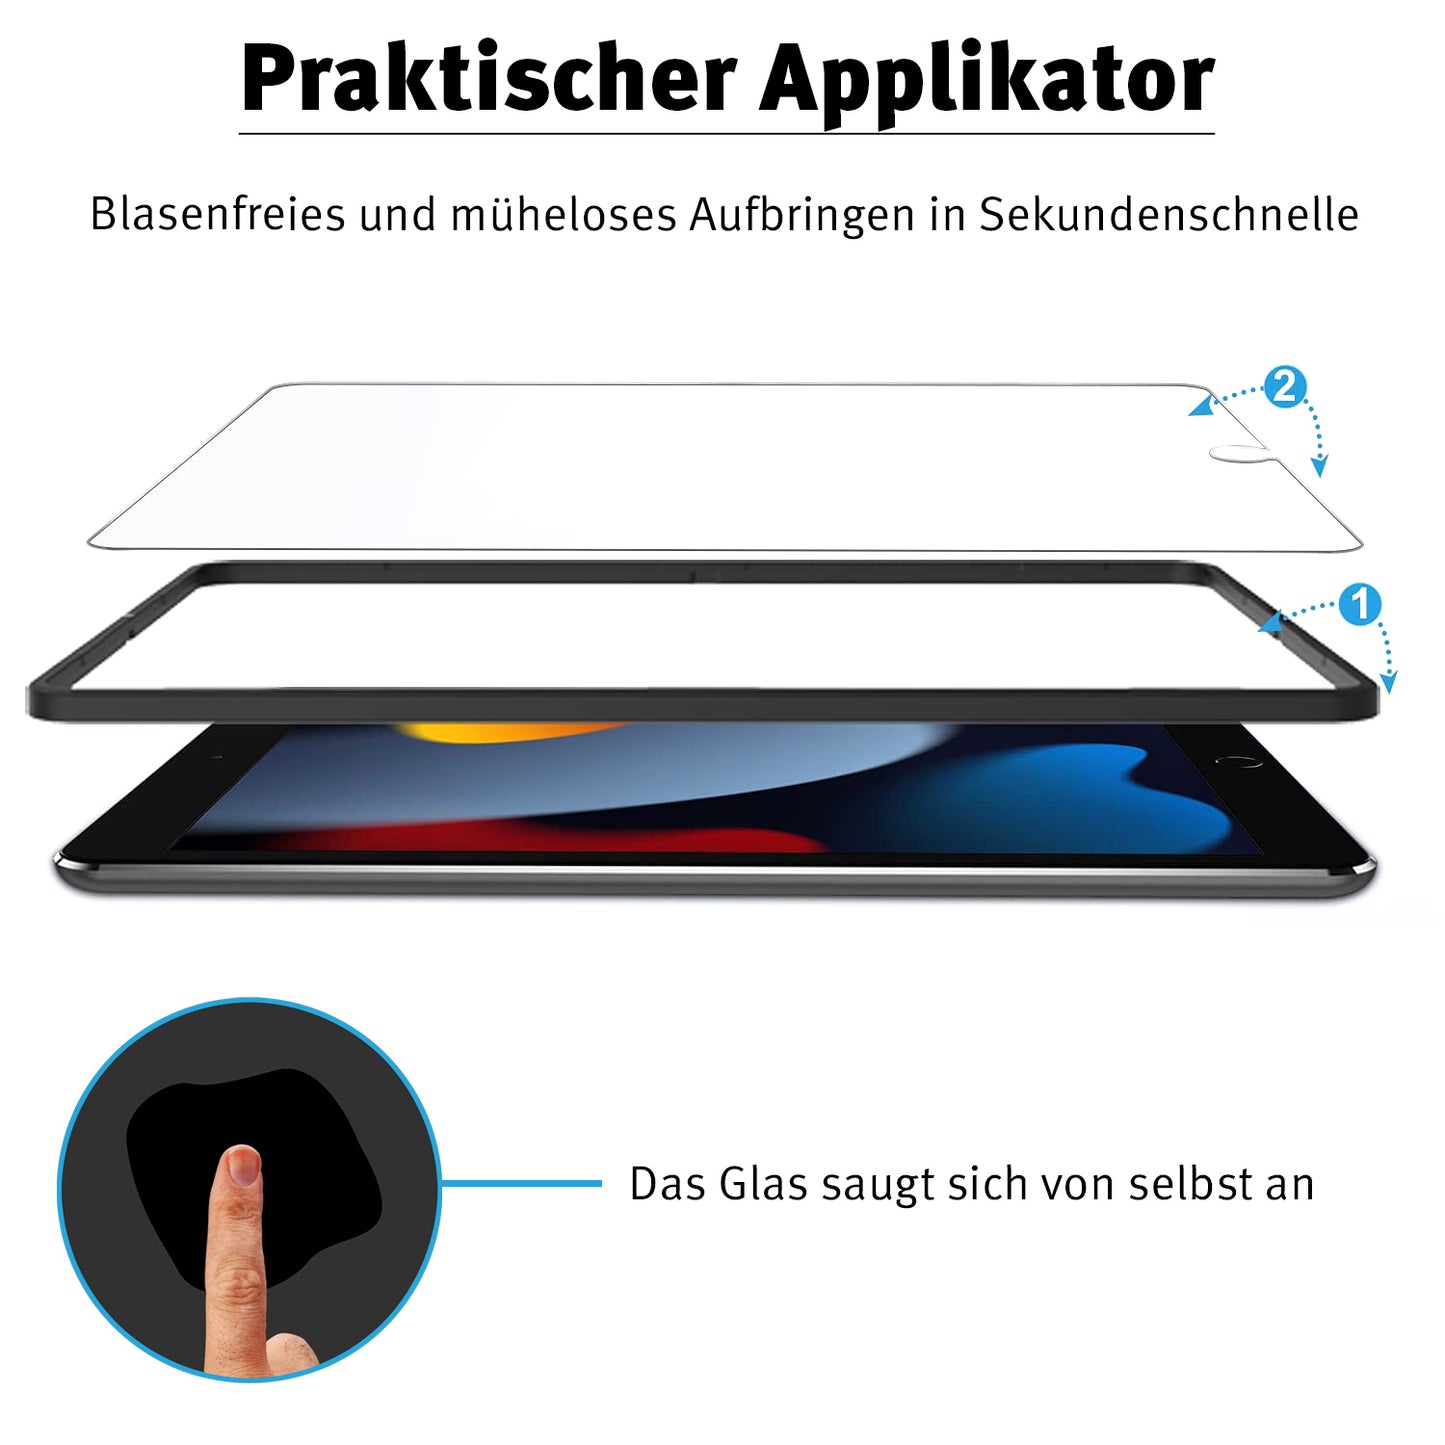 arktis PaperFeel iPad Air 10,9" (2022/2020) PREMIUM Schutzglas